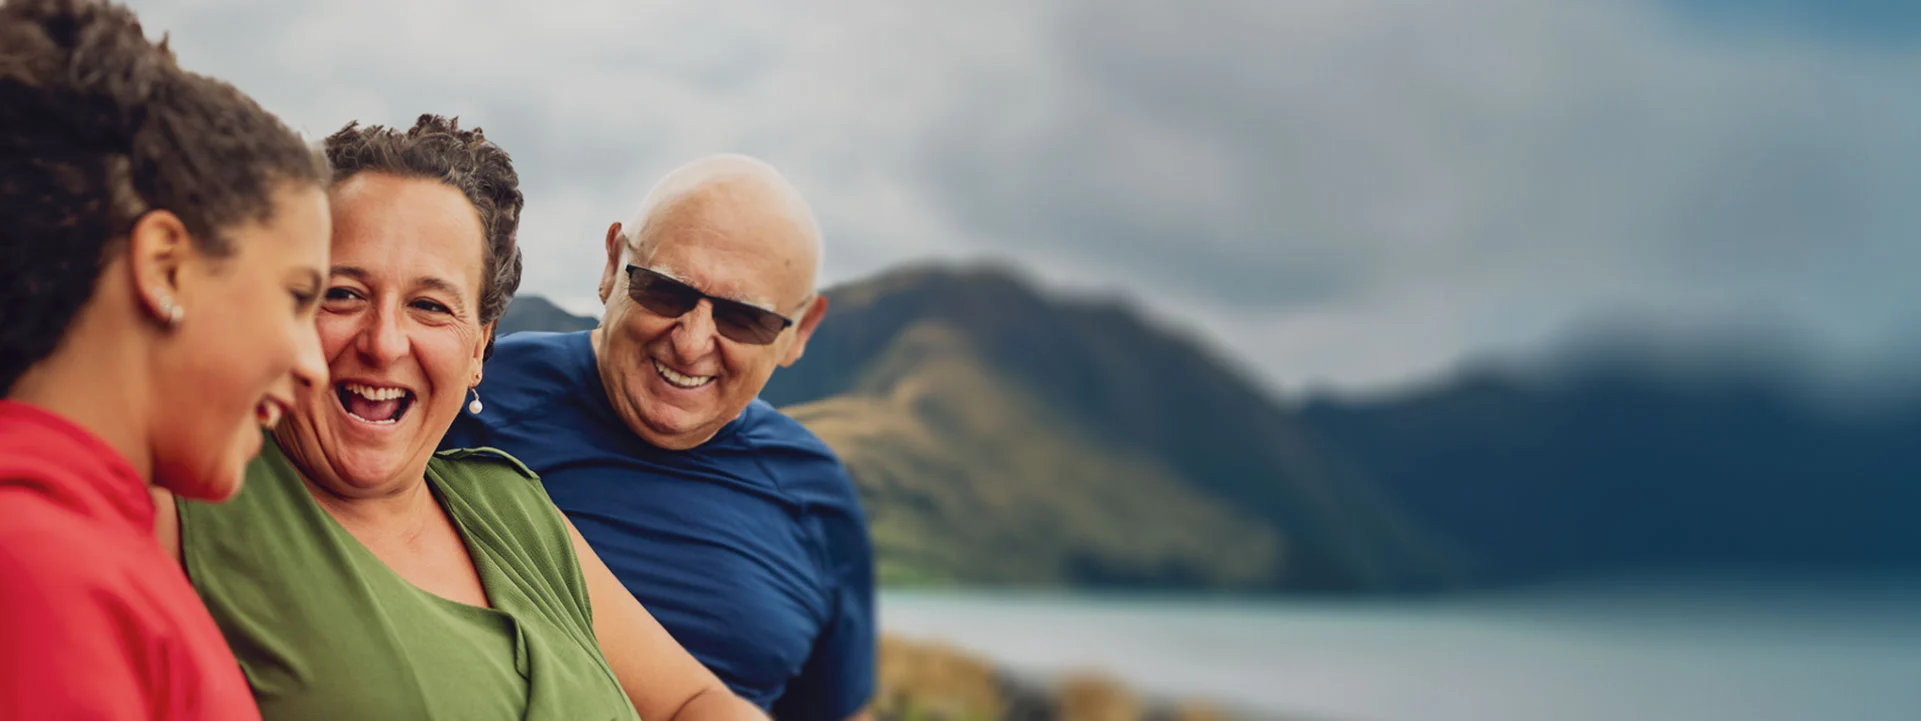 GRG Trust NZ supports those raising grandchildren or children within whānau